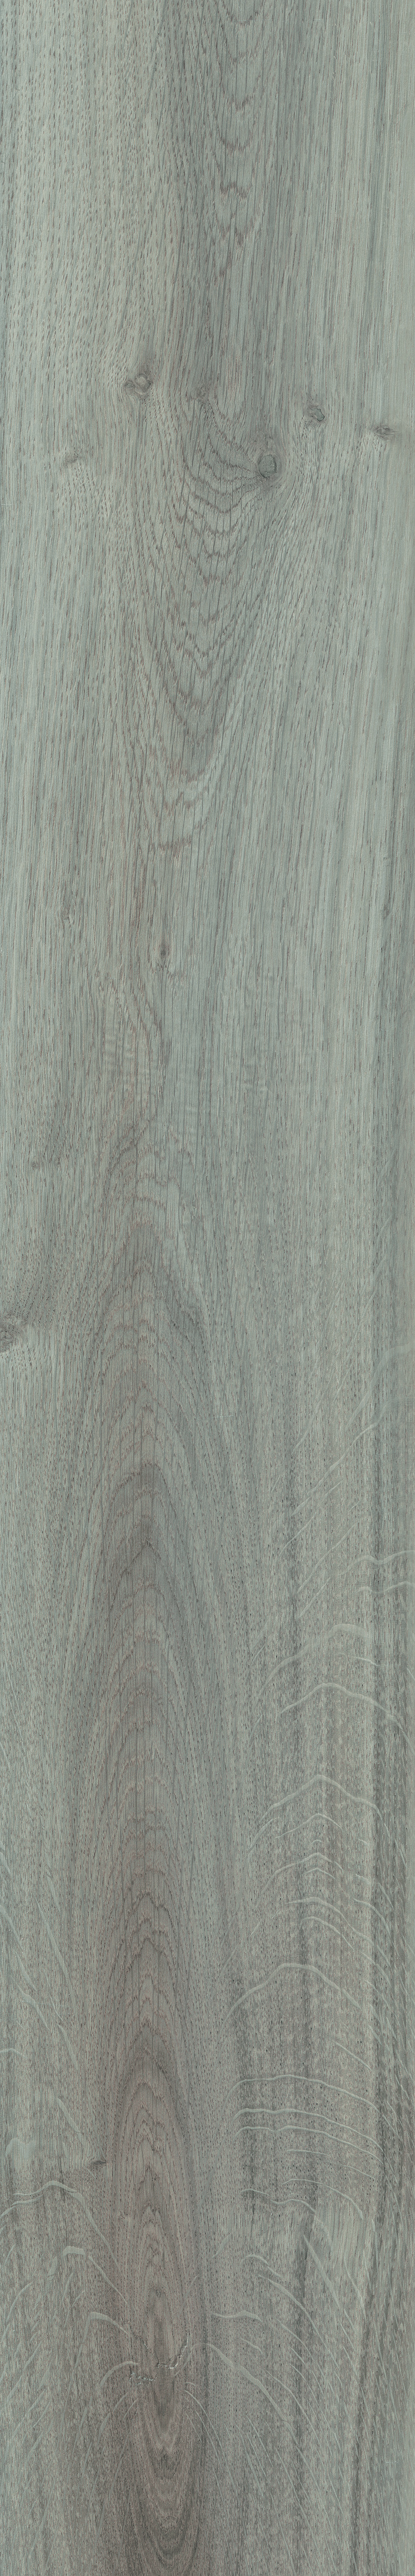 0-md bl wood grigio (2).jpg